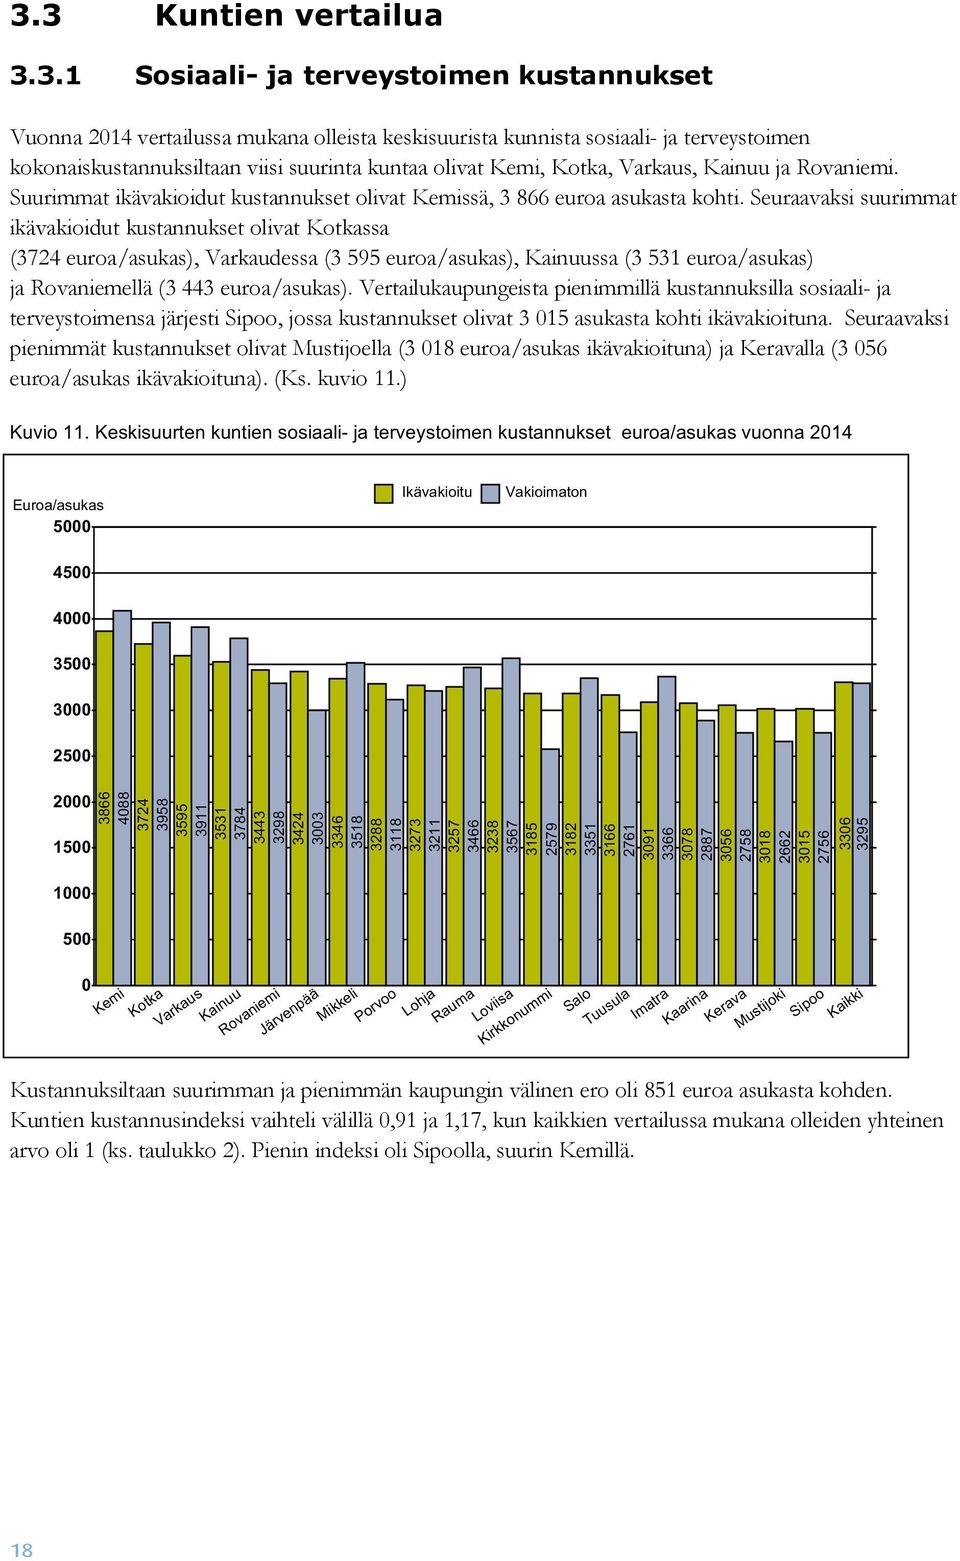 Seuraavaksi suurimmat ikävakioidut kustannukset olivat Kotkassa (3724 euroa/asukas), Varkaudessa (3 595 euroa/asukas), Kainuussa (3 531 euroa/asukas) ja Rovaniemellä (3 443 euroa/asukas).